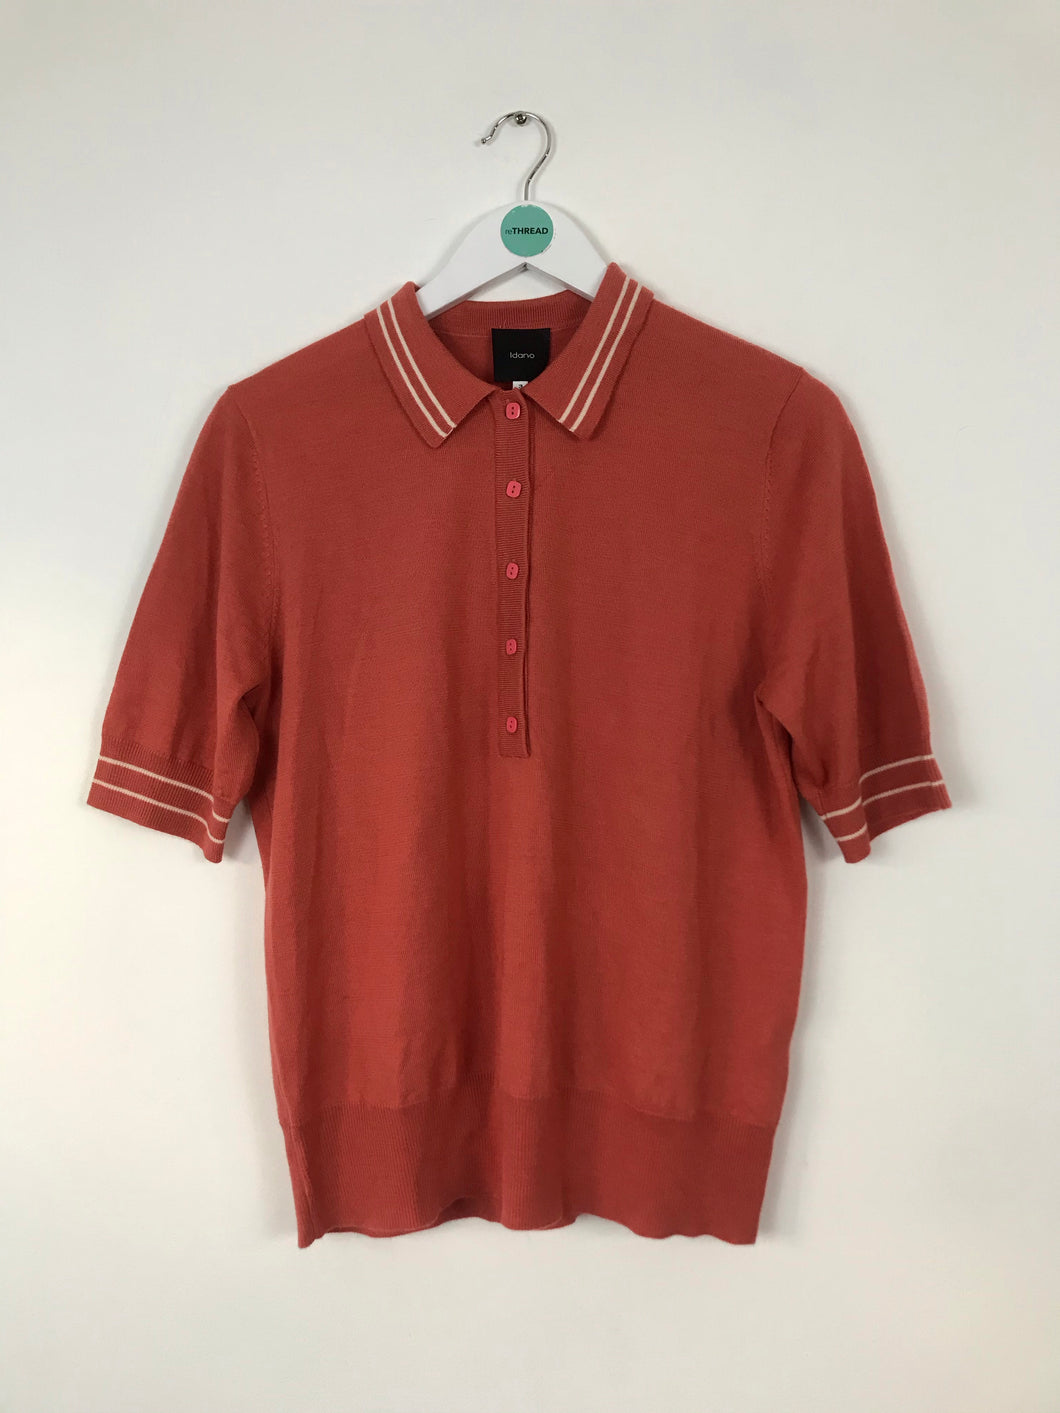 Idano Womens Knit Polo T-shirt | UK14 | Pink/Orange